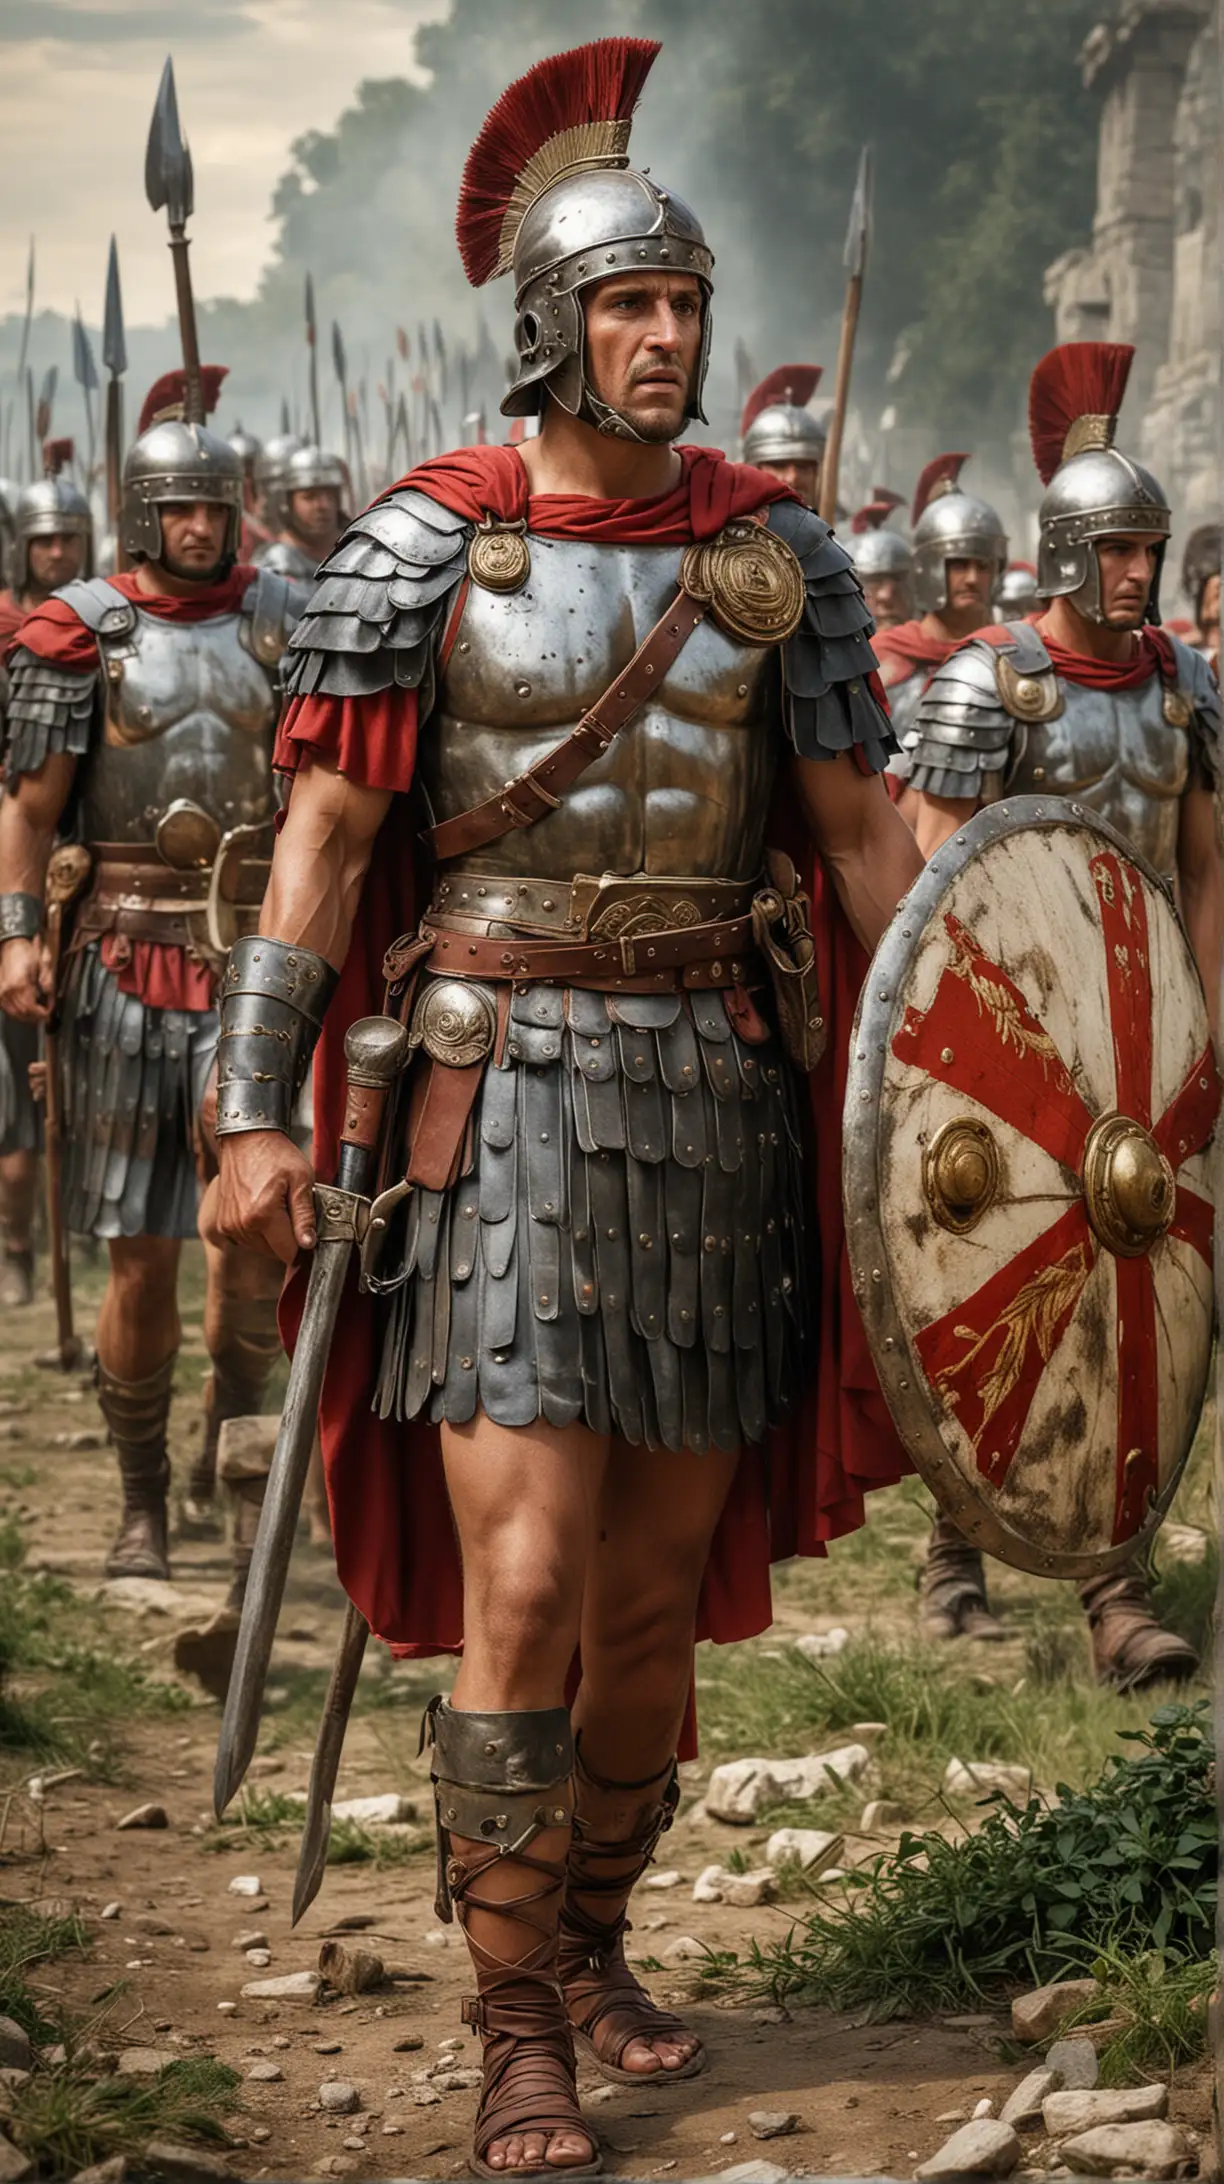 Mighty Roman Legionnaires Conquering Vast Territories